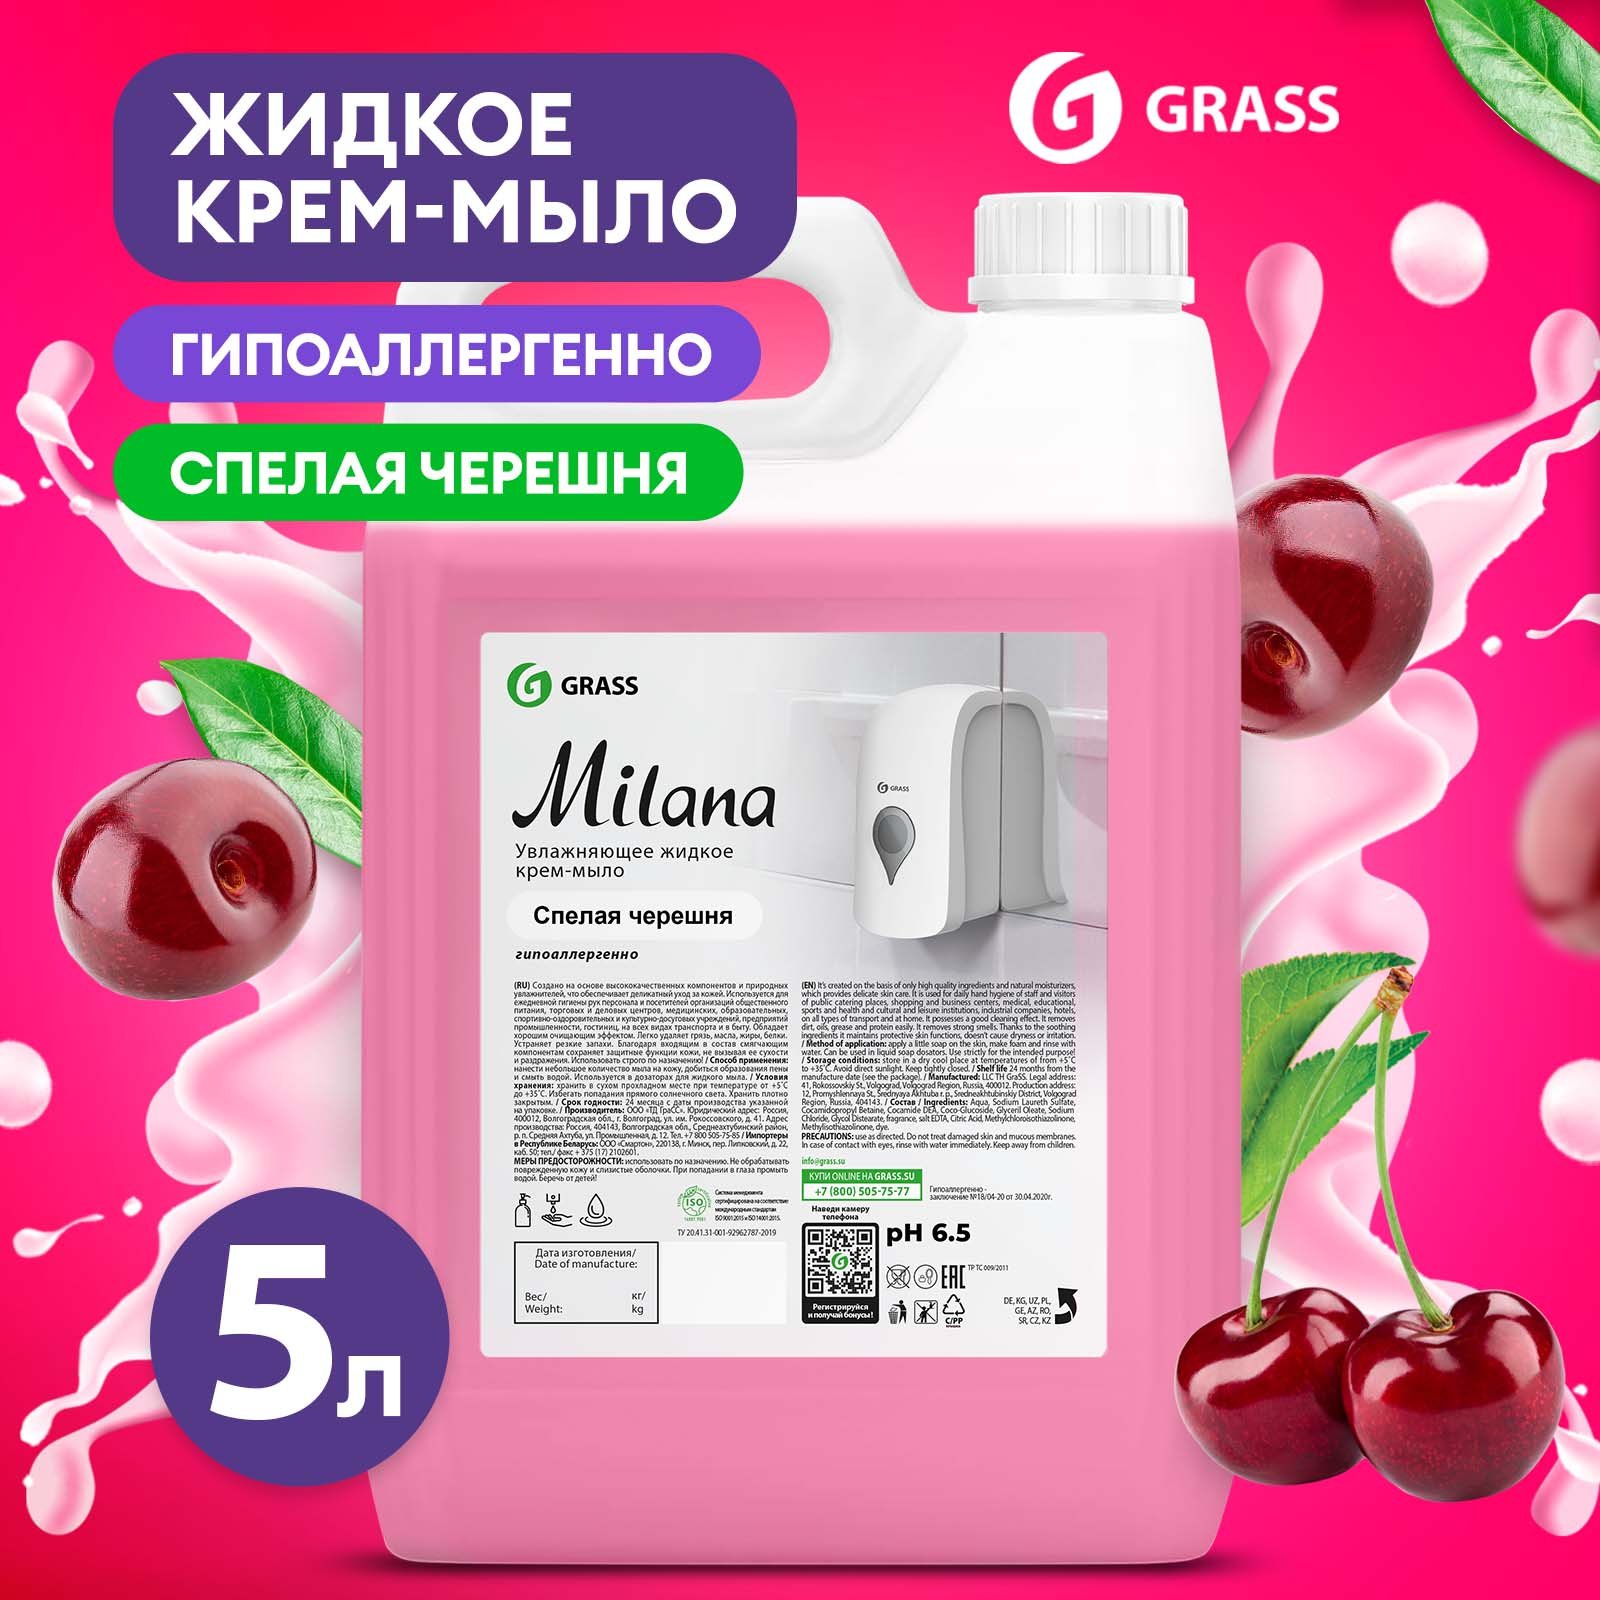 Мыло жидкое для рук Grass Milana Черешня туалетное, густое, гипоаллергенное 5 л жидкое гигиеническое мыло для женщин